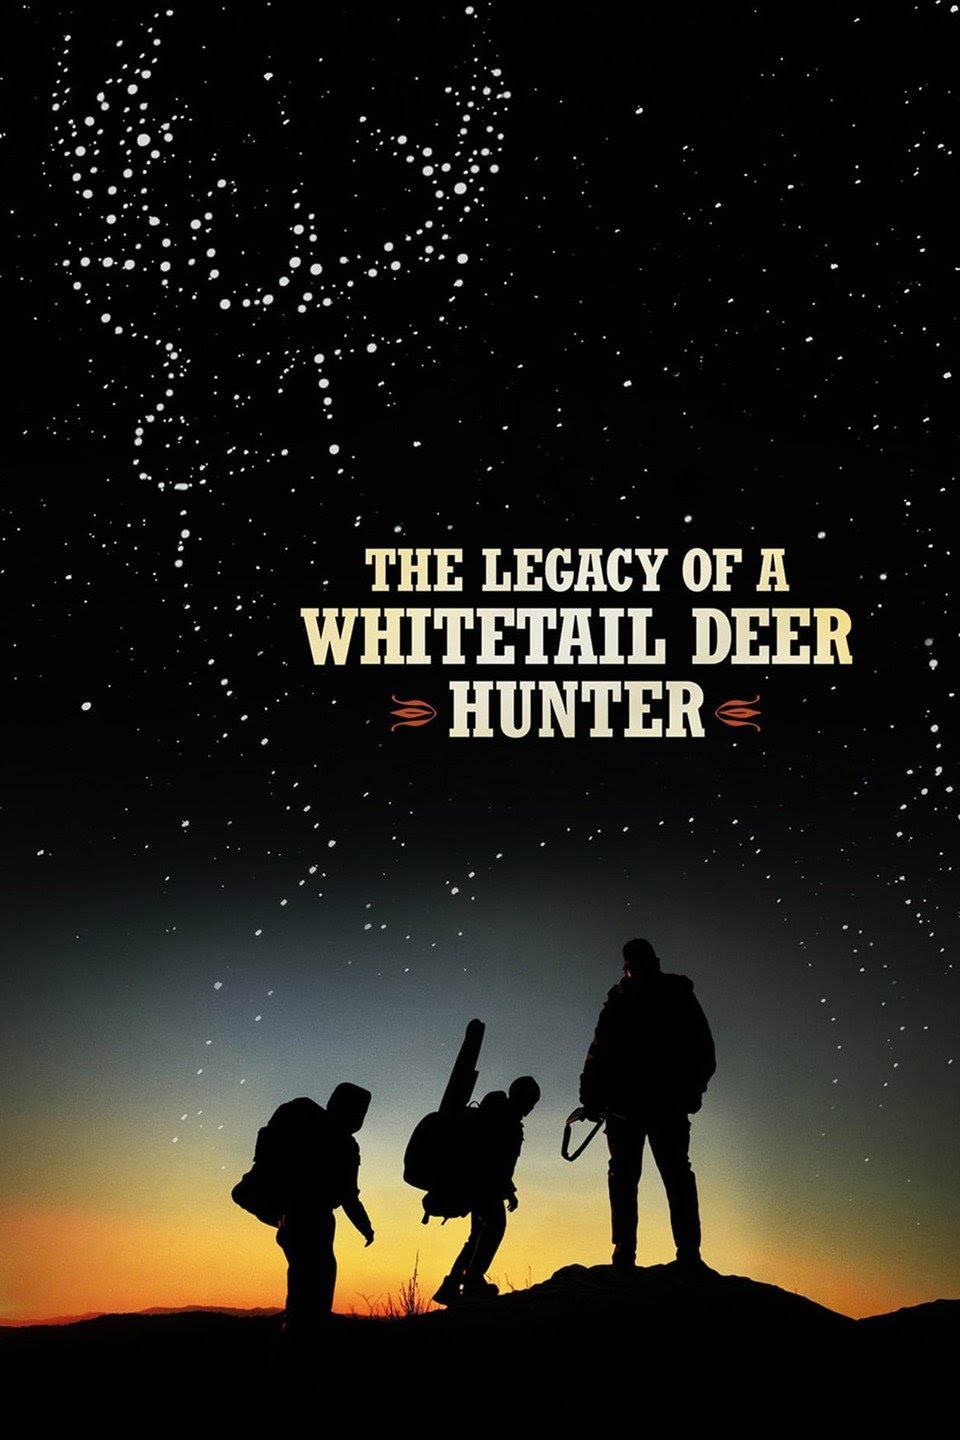 [ฝรั่ง] The Legacy of a Whitetail Deer Hunter (2018) คุณพ่อหนวดดุสอนลูกให้เป็นพราน [1080p] [พากย์อังกฤษ 5.1] [Soundtrack บรรยายไทย] [เสียงอังกฤษ + ซับไทย] [ONE2UP]